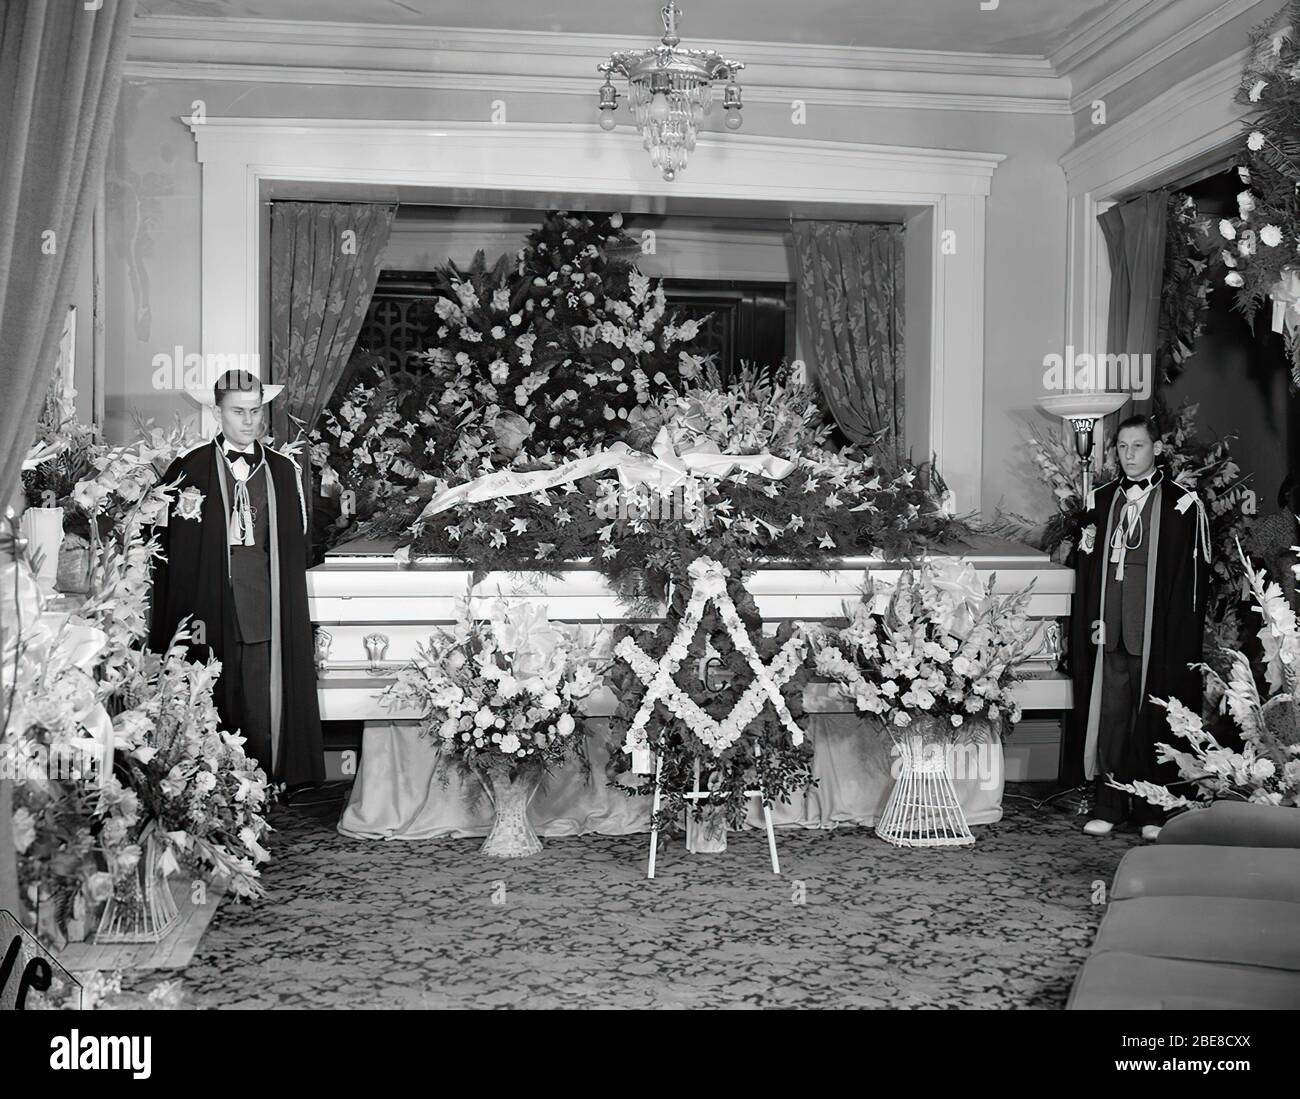 Beerdigung des höchsten Mannes auf der Erde. Am 22. Februar 1918 wurde  Robert Wadlow in Alton (USA) geboren. Das Kind war von durchschnittlicher  Größe und es gab keinen Hinweis darauf, dass er